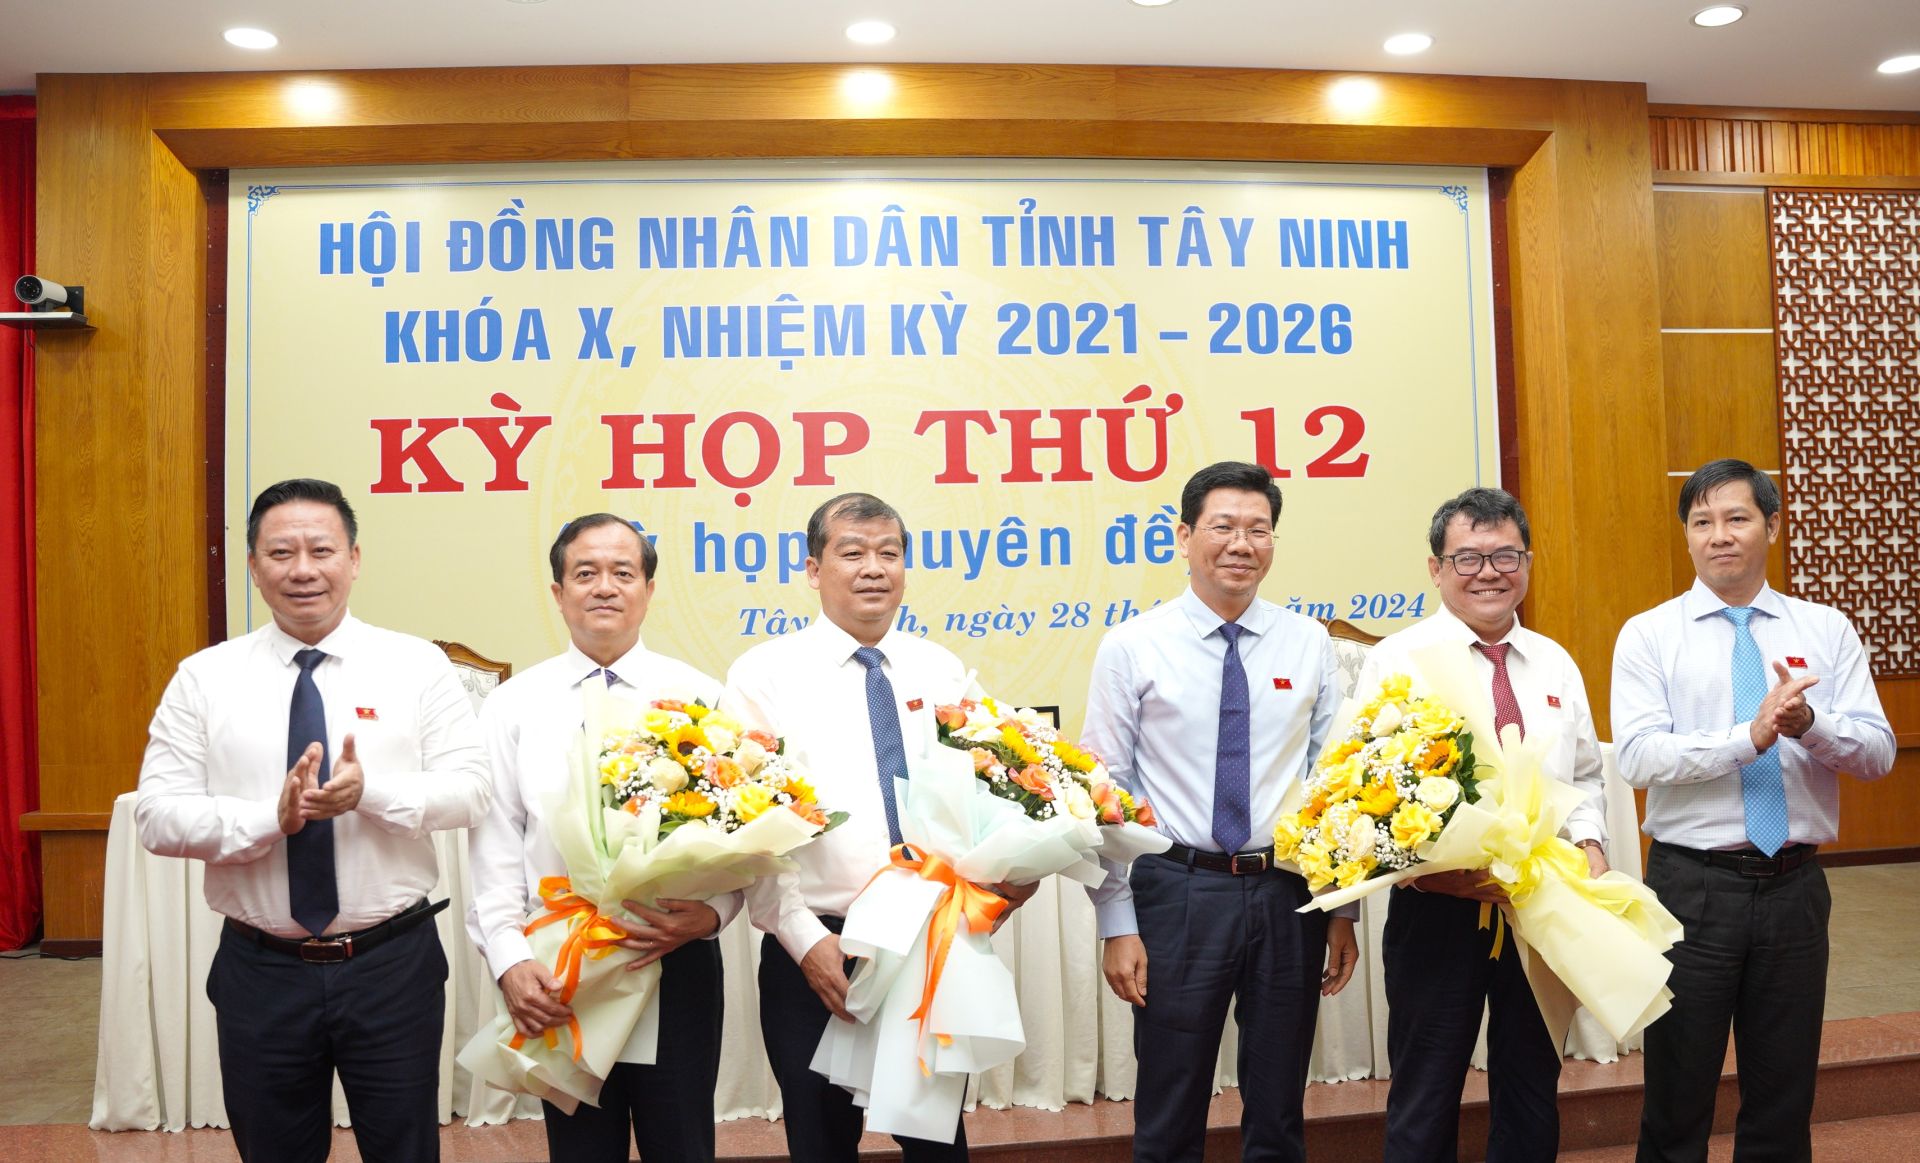 Phê chuẩn Phó Chủ tịch UBND tỉnh Tây Ninh với ông Nguyễn Hồng Thanh